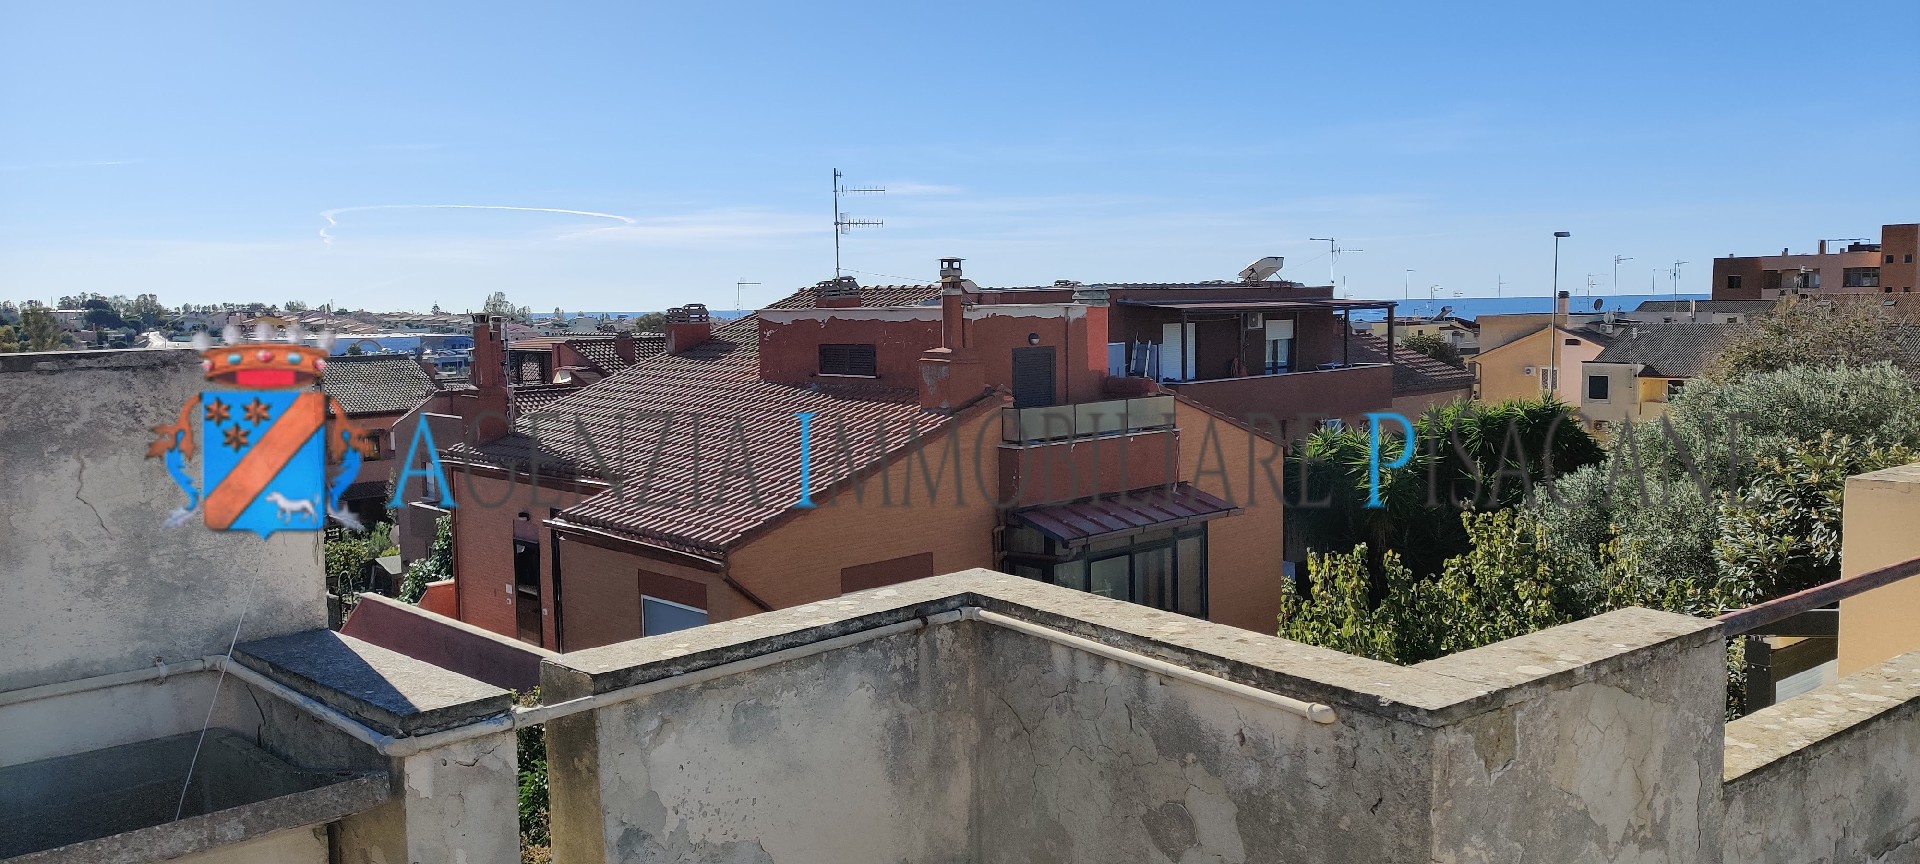 Terrazza  - Agenzia Immobiliare & Architettura Pisacane